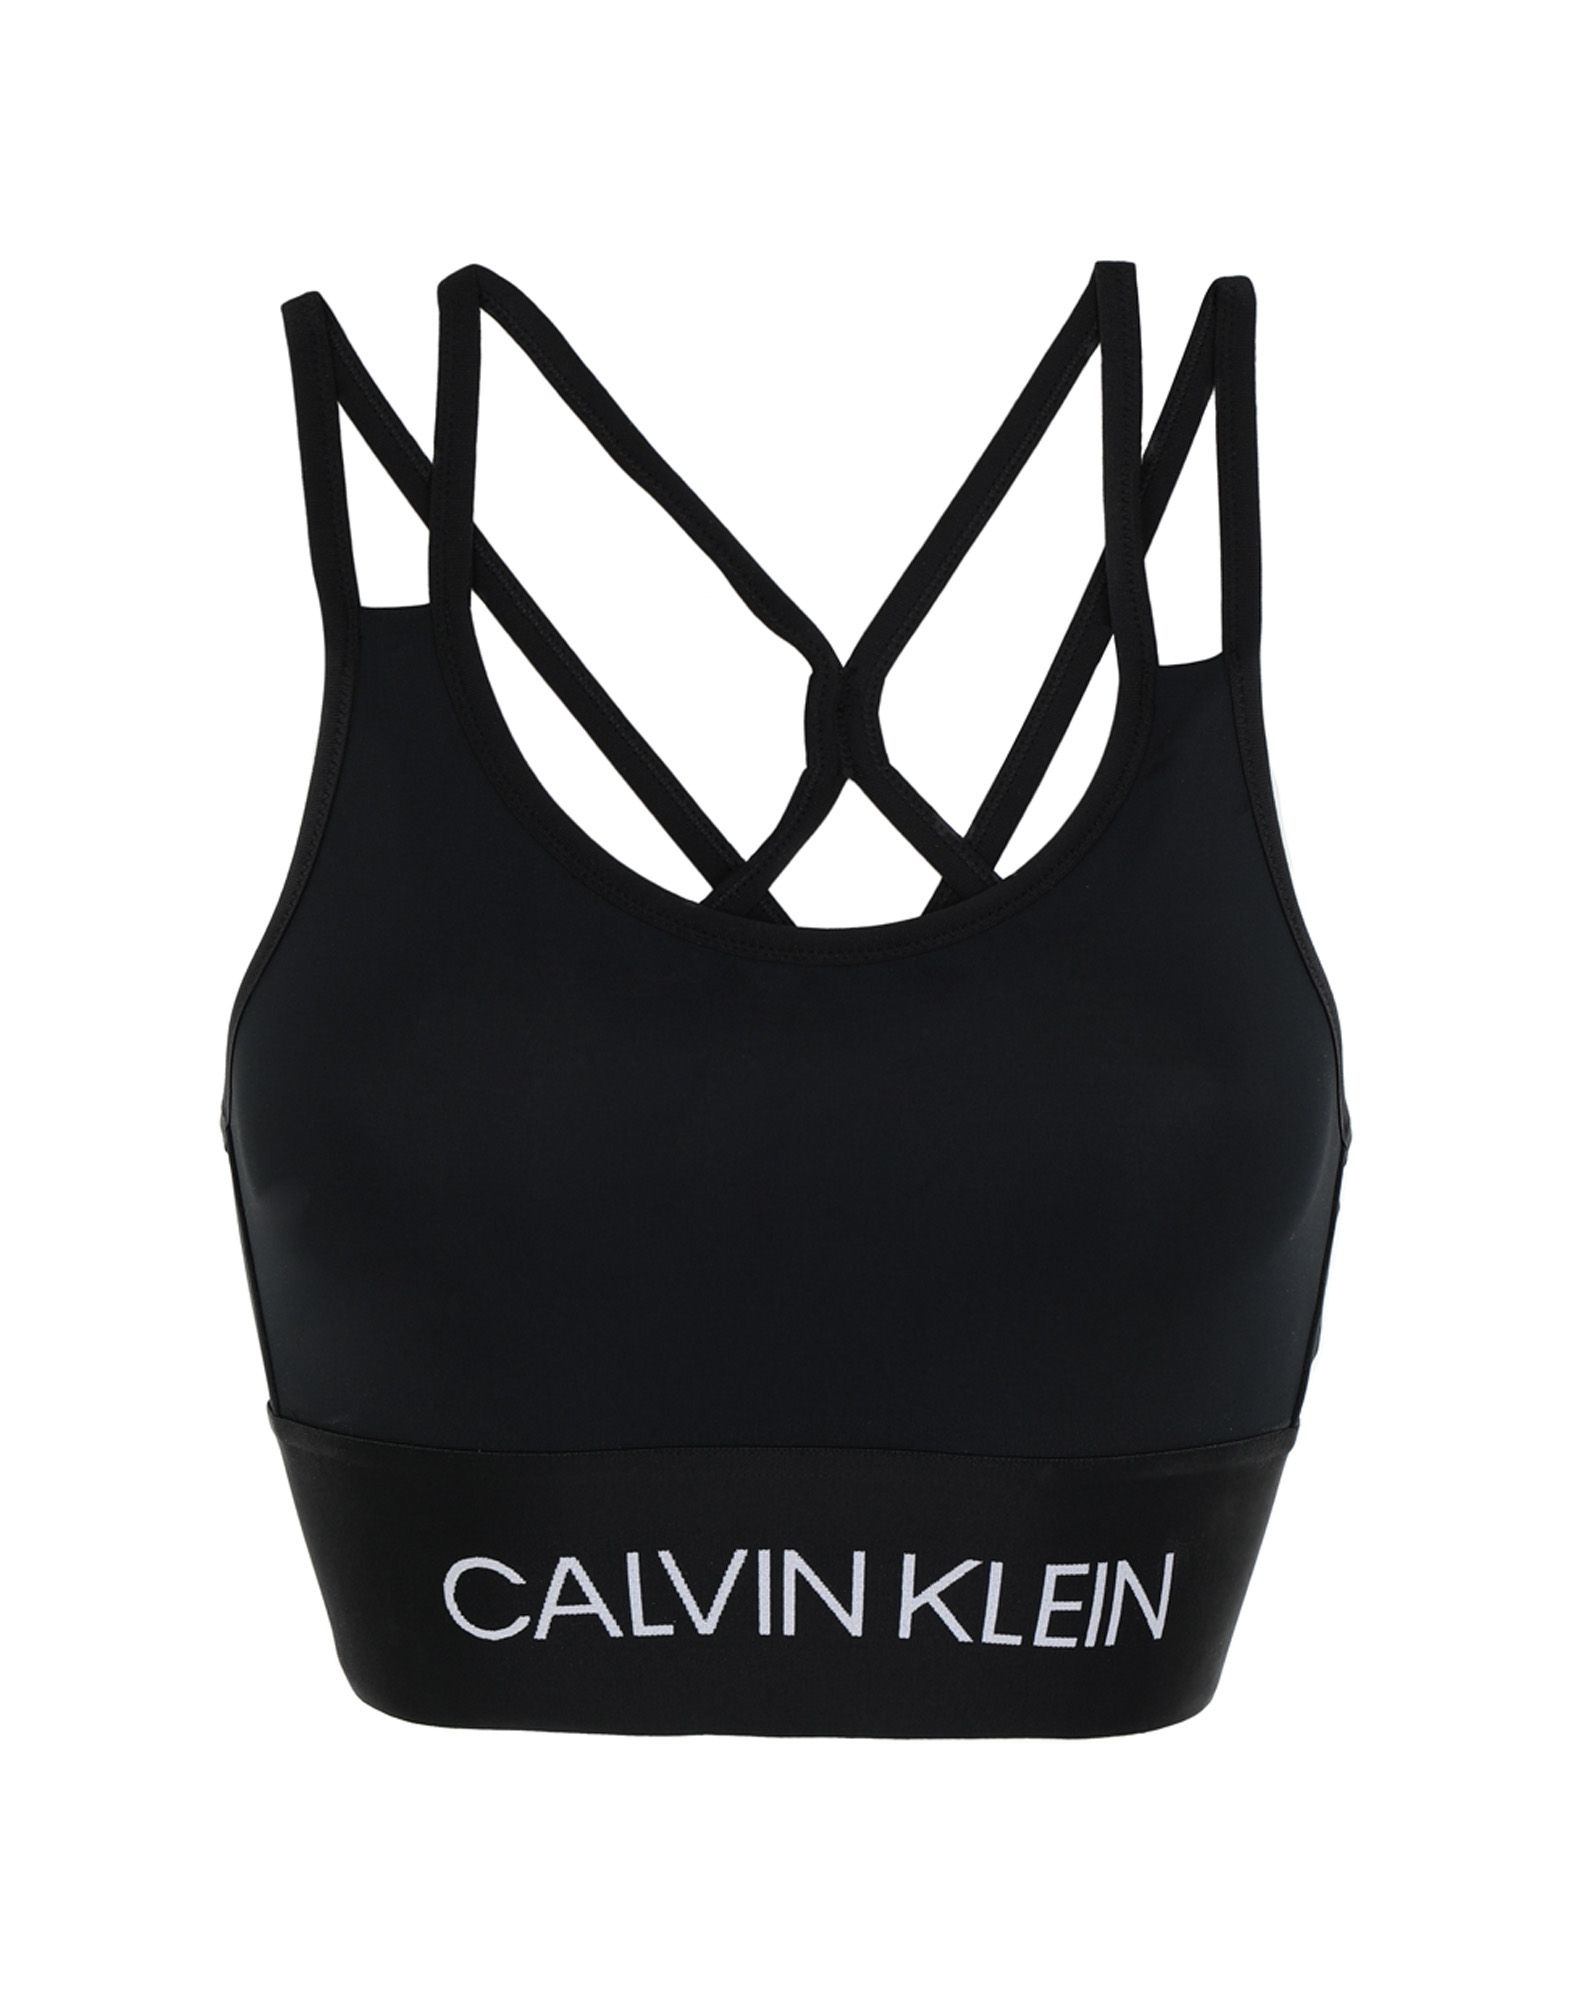 Calvin Klein Performance Sports Bras